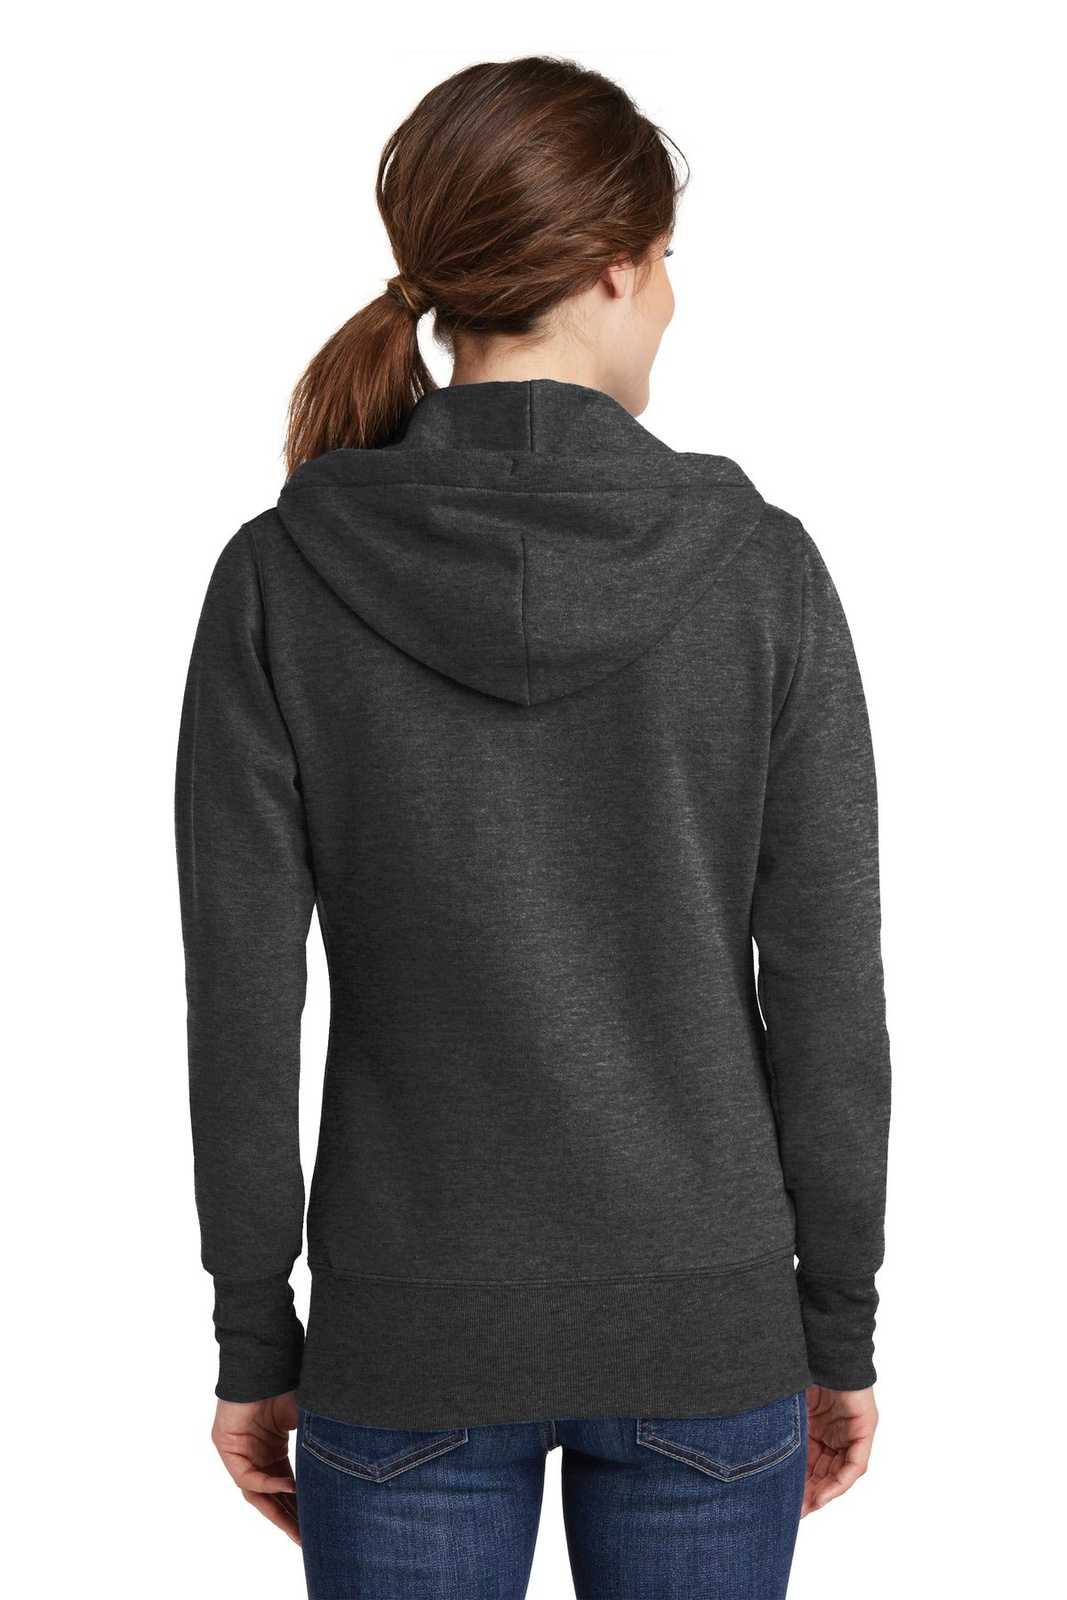 Port & Company LPC78ZH Ladies Core Fleece Full-Zip Hooded Sweatshirt - Dark Heather Gray - HIT a Double - 1